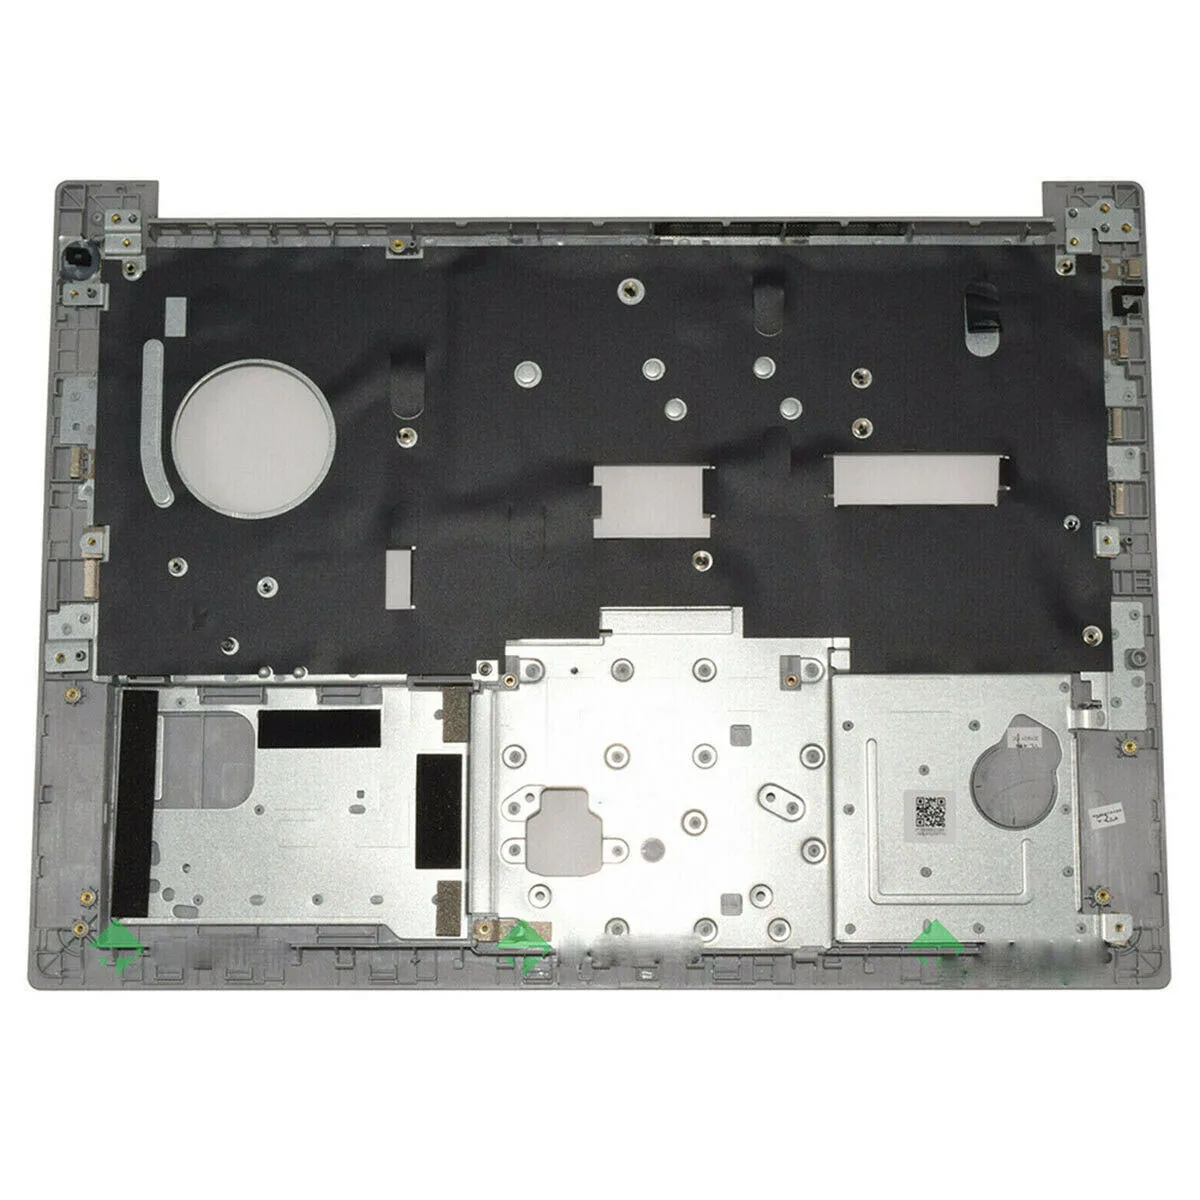 

New Upper Case Palmrest For Lenovo Thinkpad E480 E490 02DL684 14", Silve